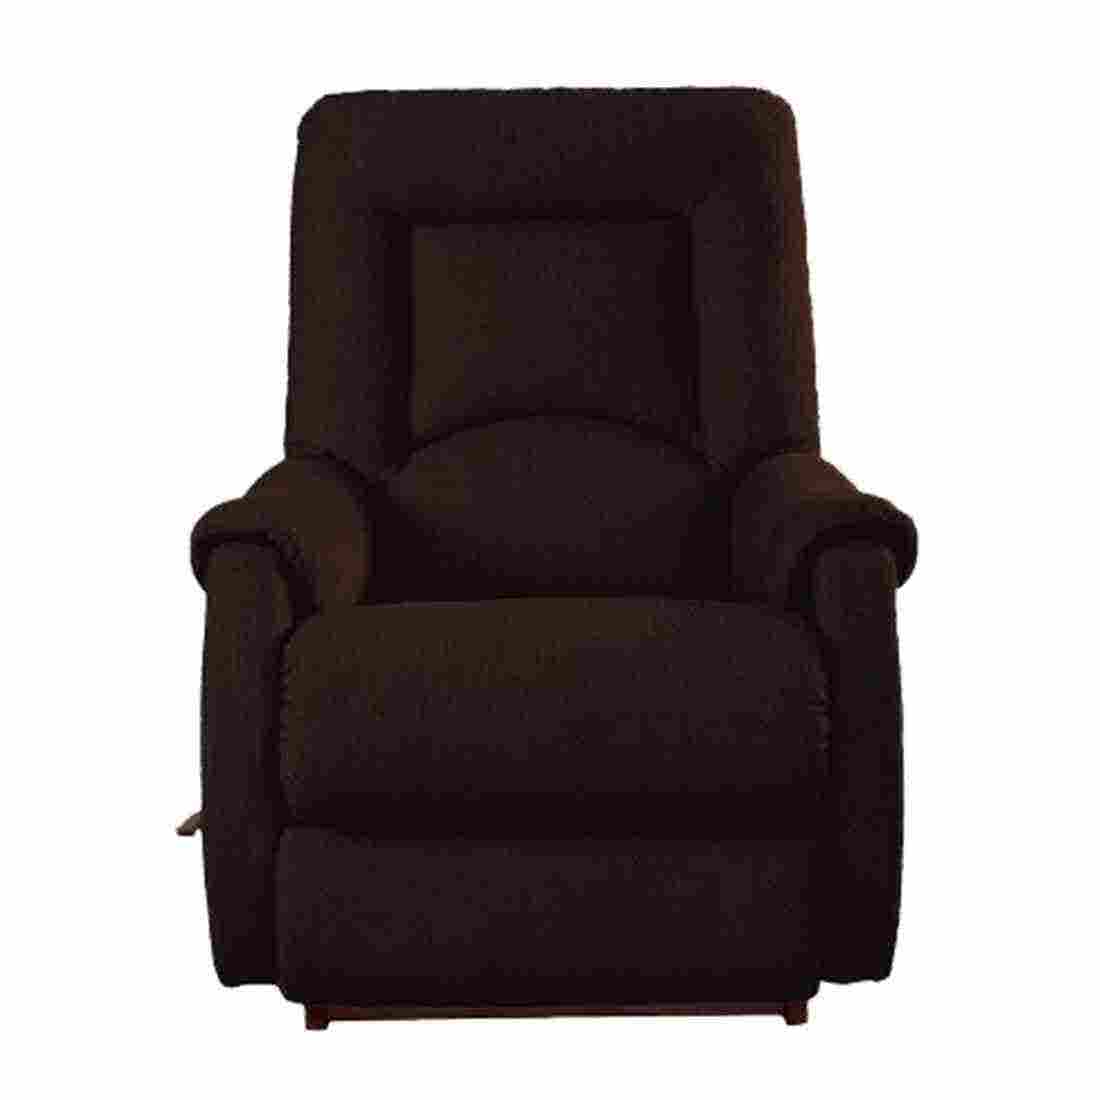 เก้าอี้ปรับเอนนอน La-Z-Boy 10T-741-C-142678 Serenity ผ้า i-Clean สี Fudge-01